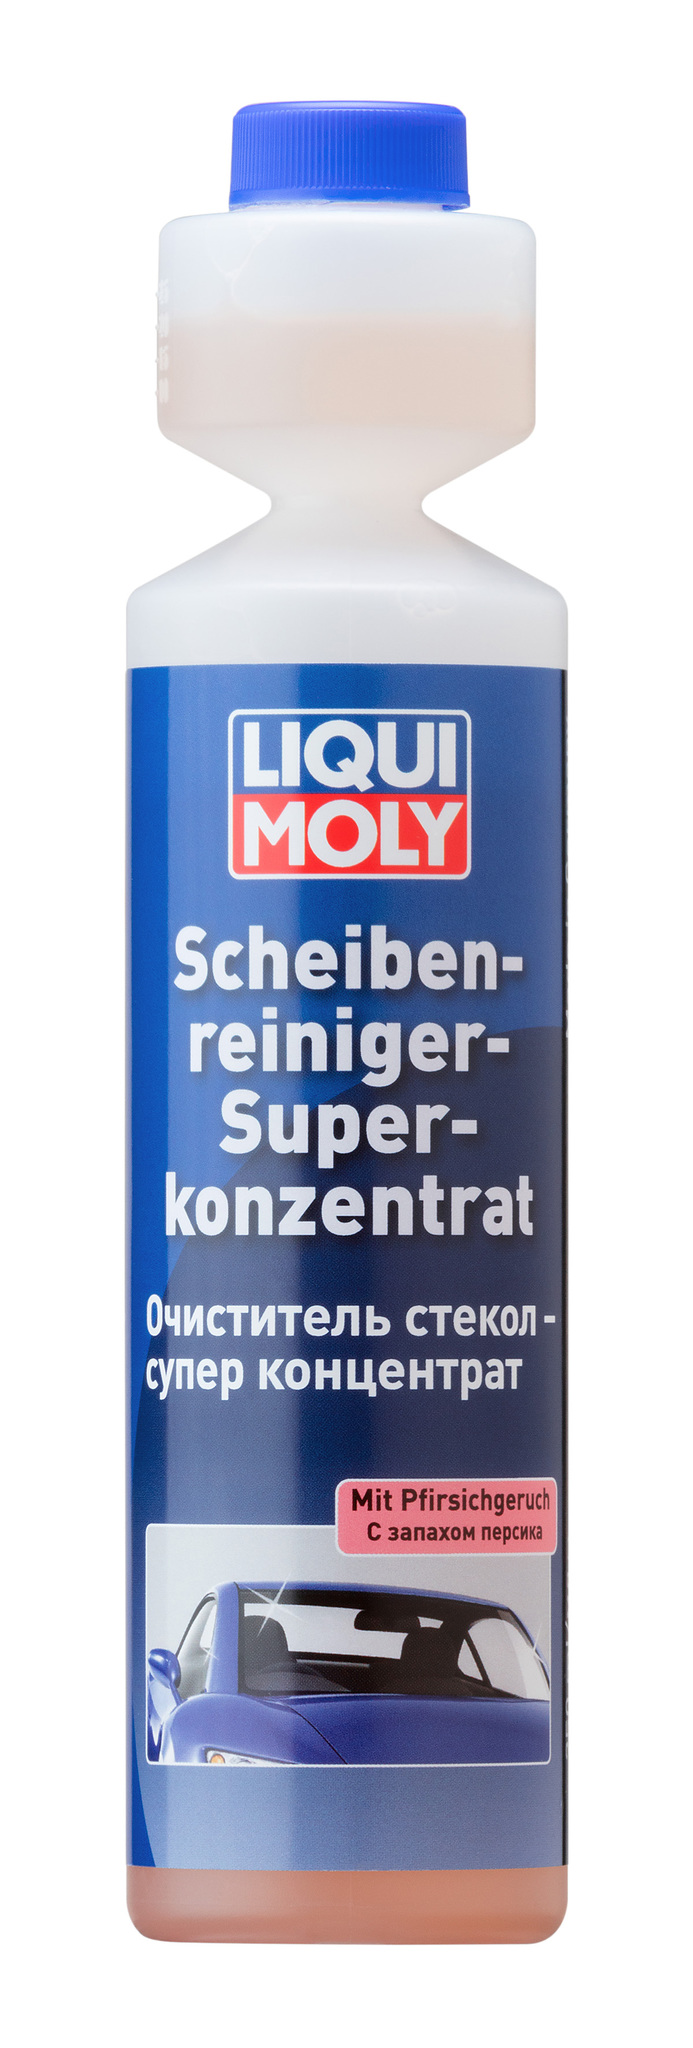 Liqui Moly Scheiben Reiniger Super Konzentrat Pfirsich Концентрат омывателя для стекол (персик)